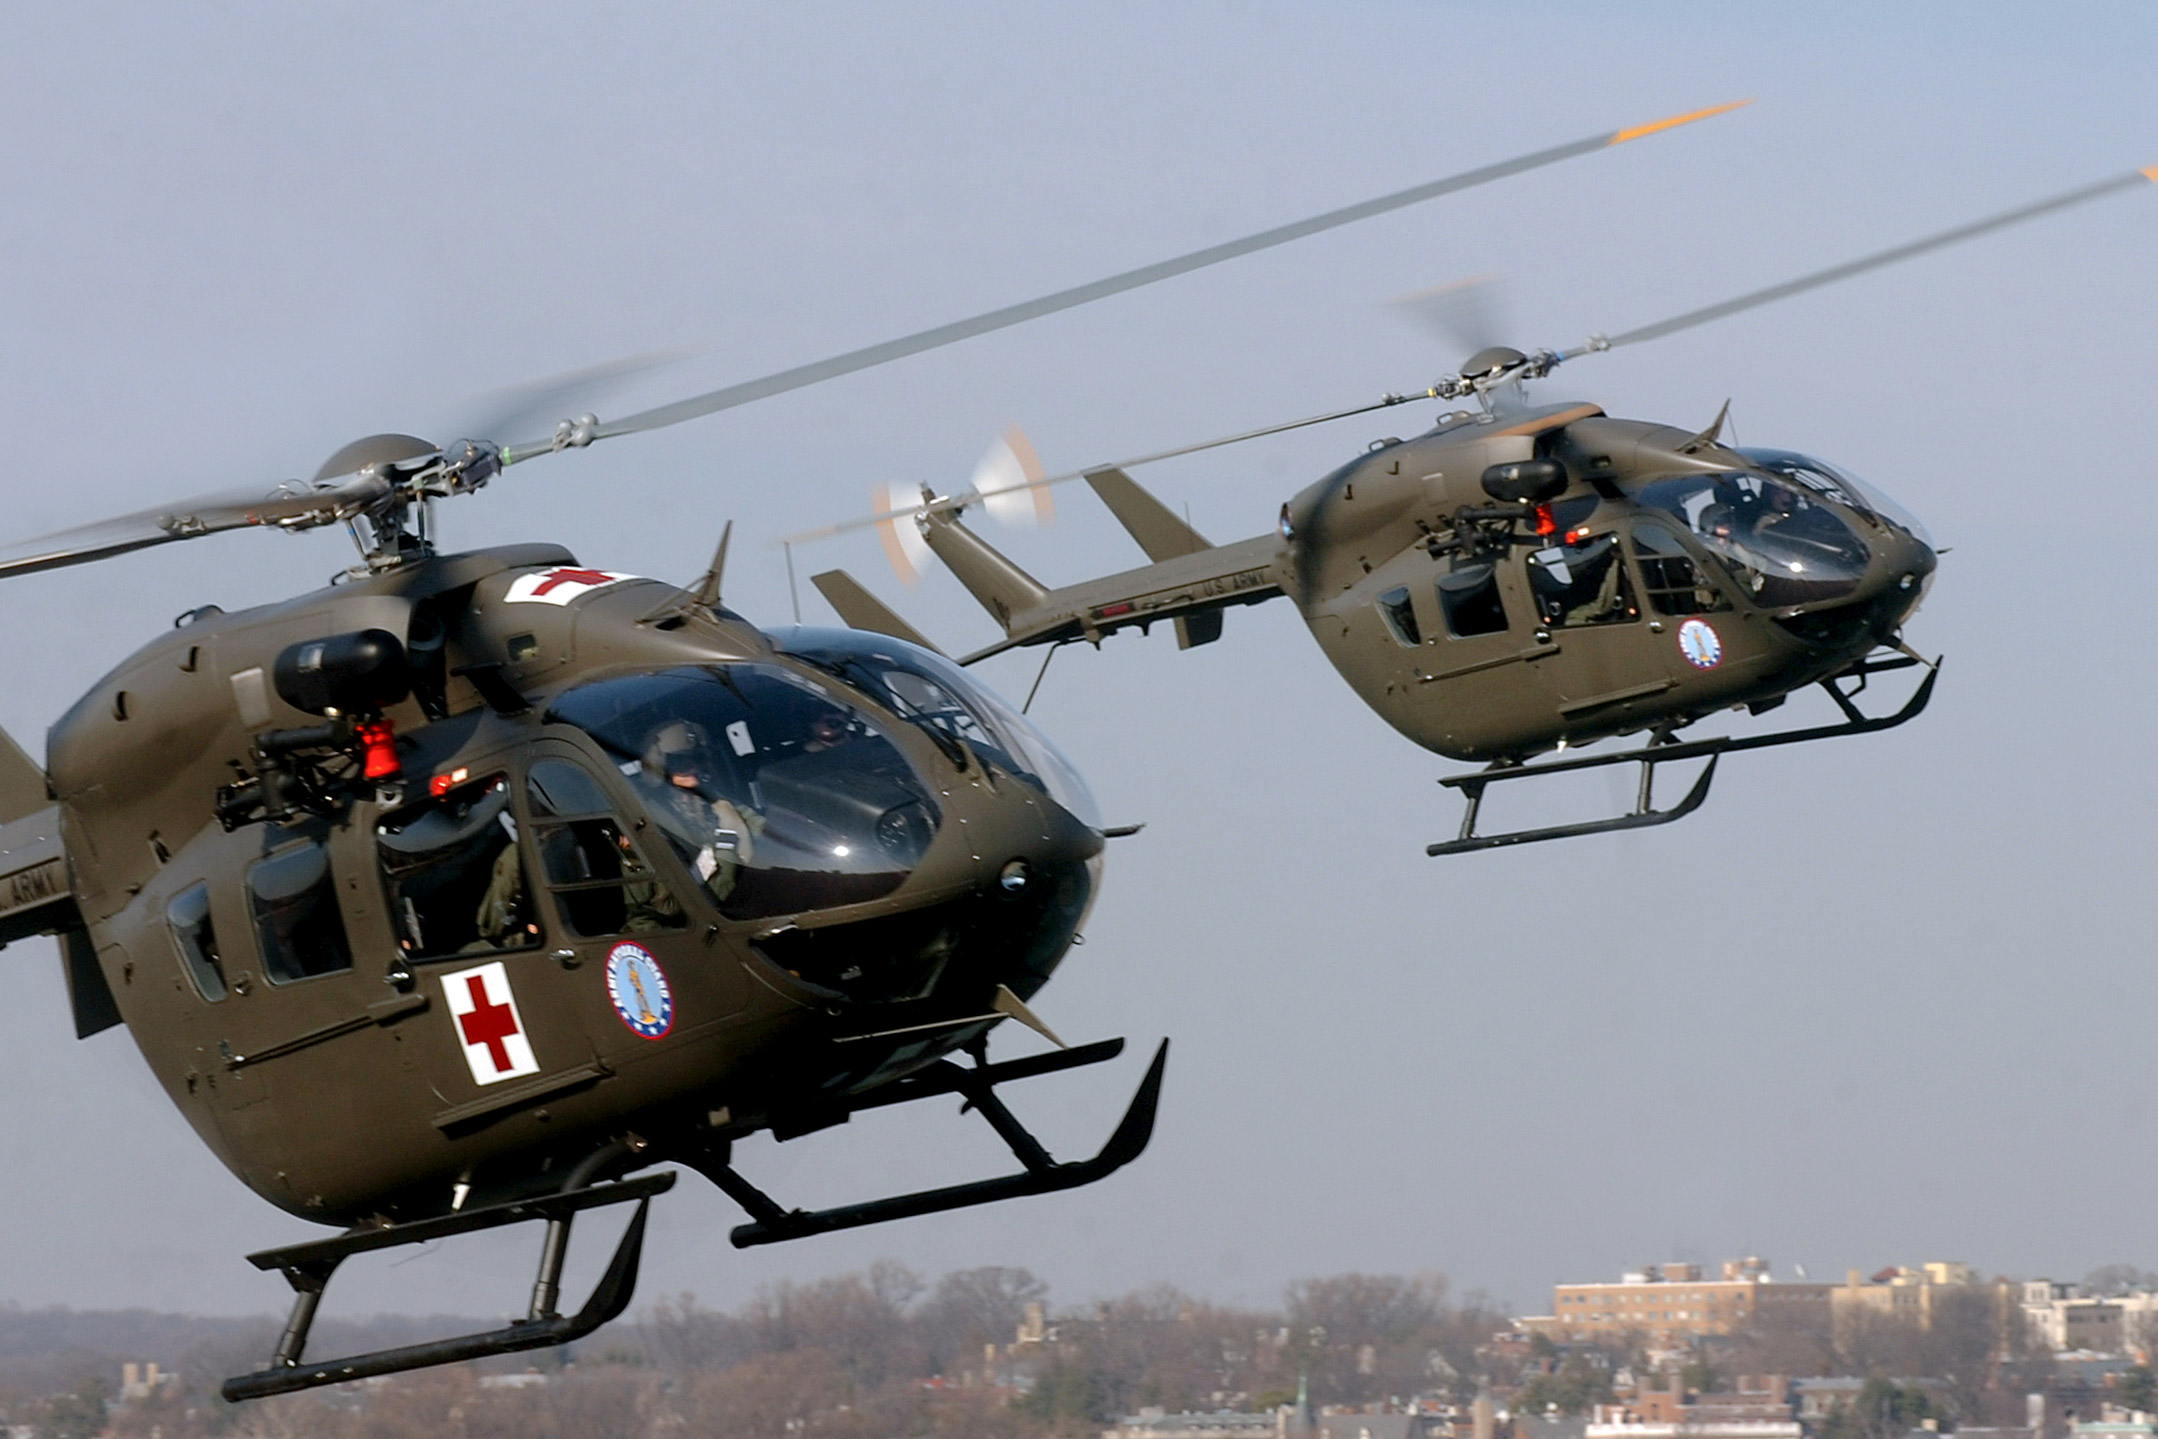 UH-72A Lakota helicopters